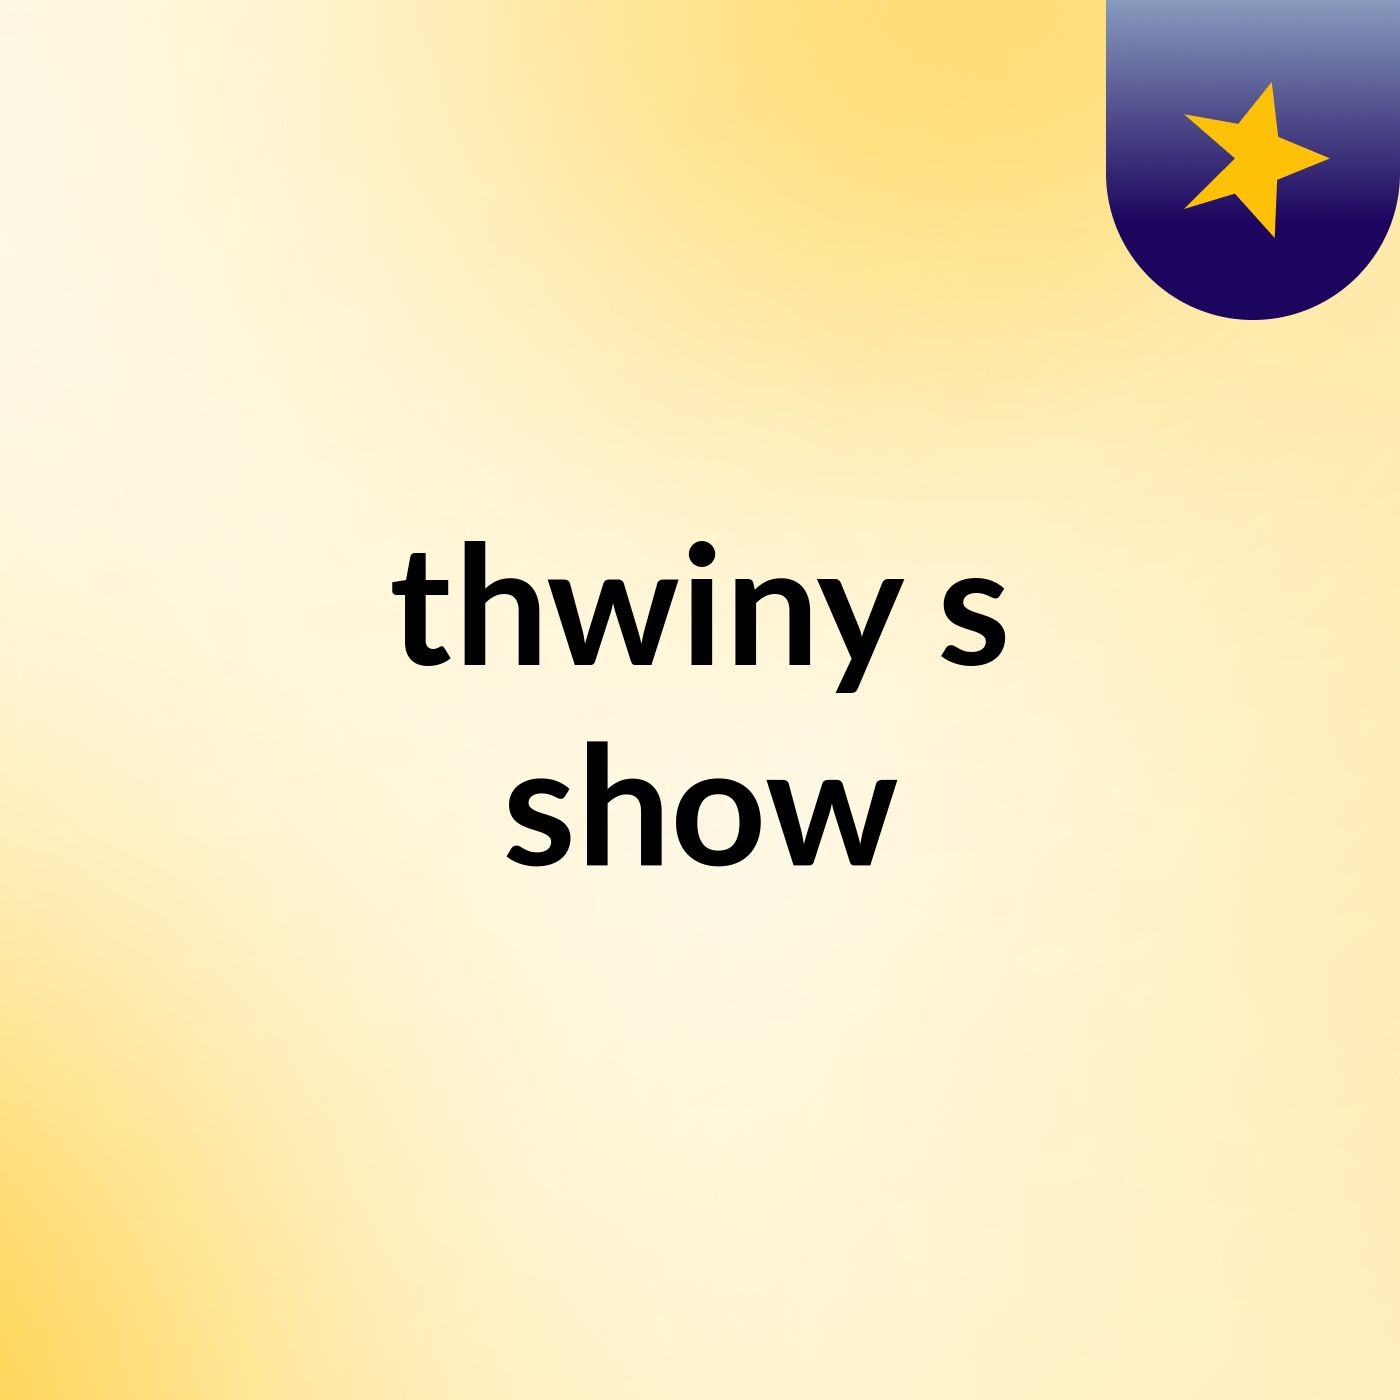 thwiny's show